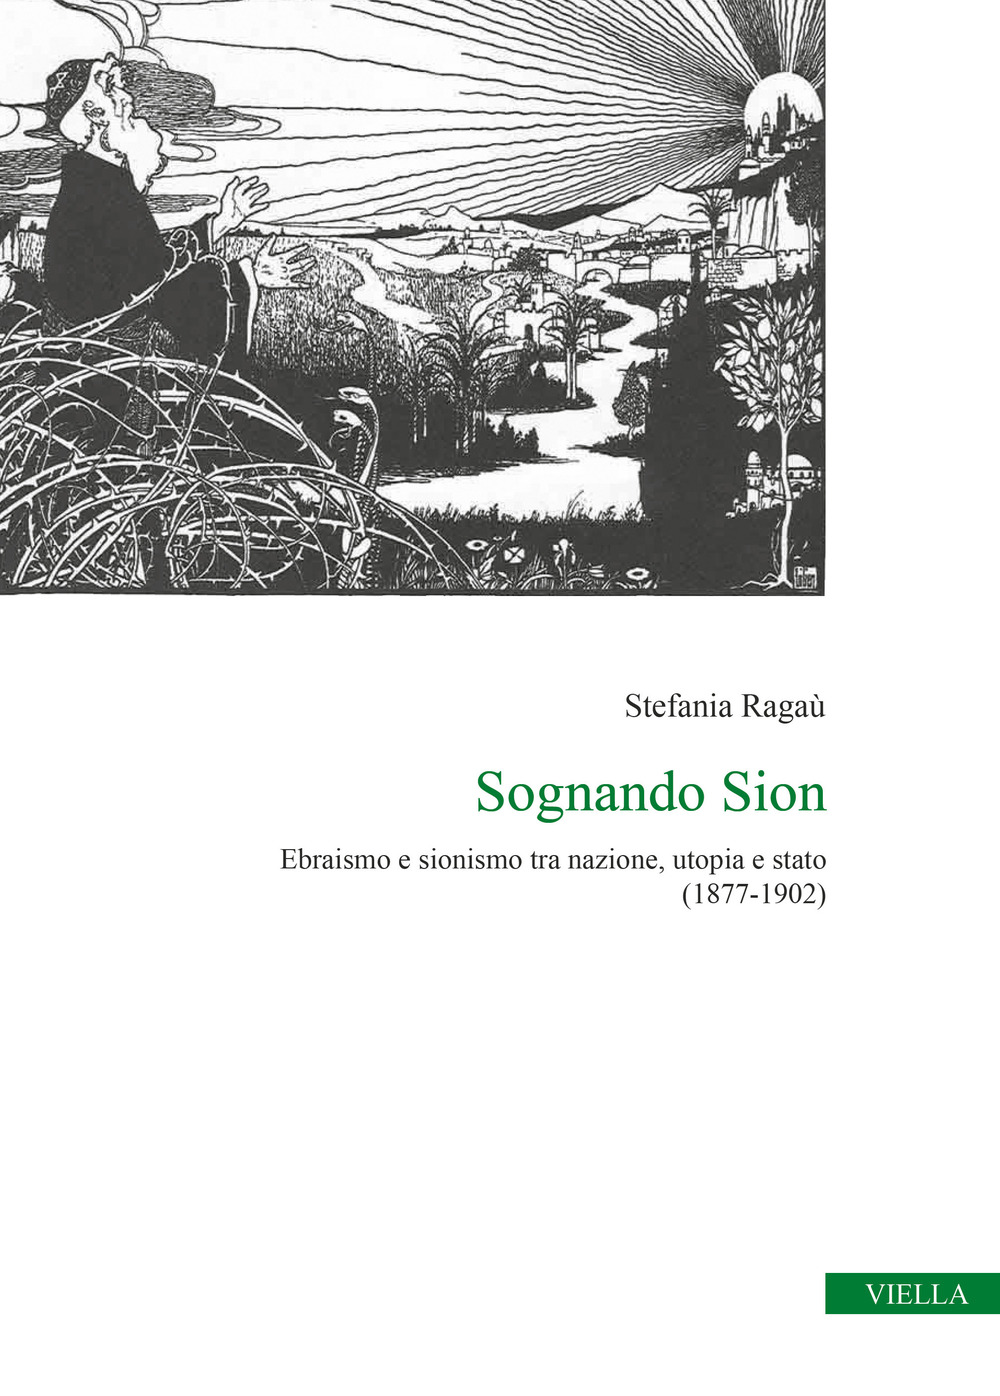 Image of Sognando Sion. Ebraismo e sionismo tra nazione, utopia e stato (1877-1902)